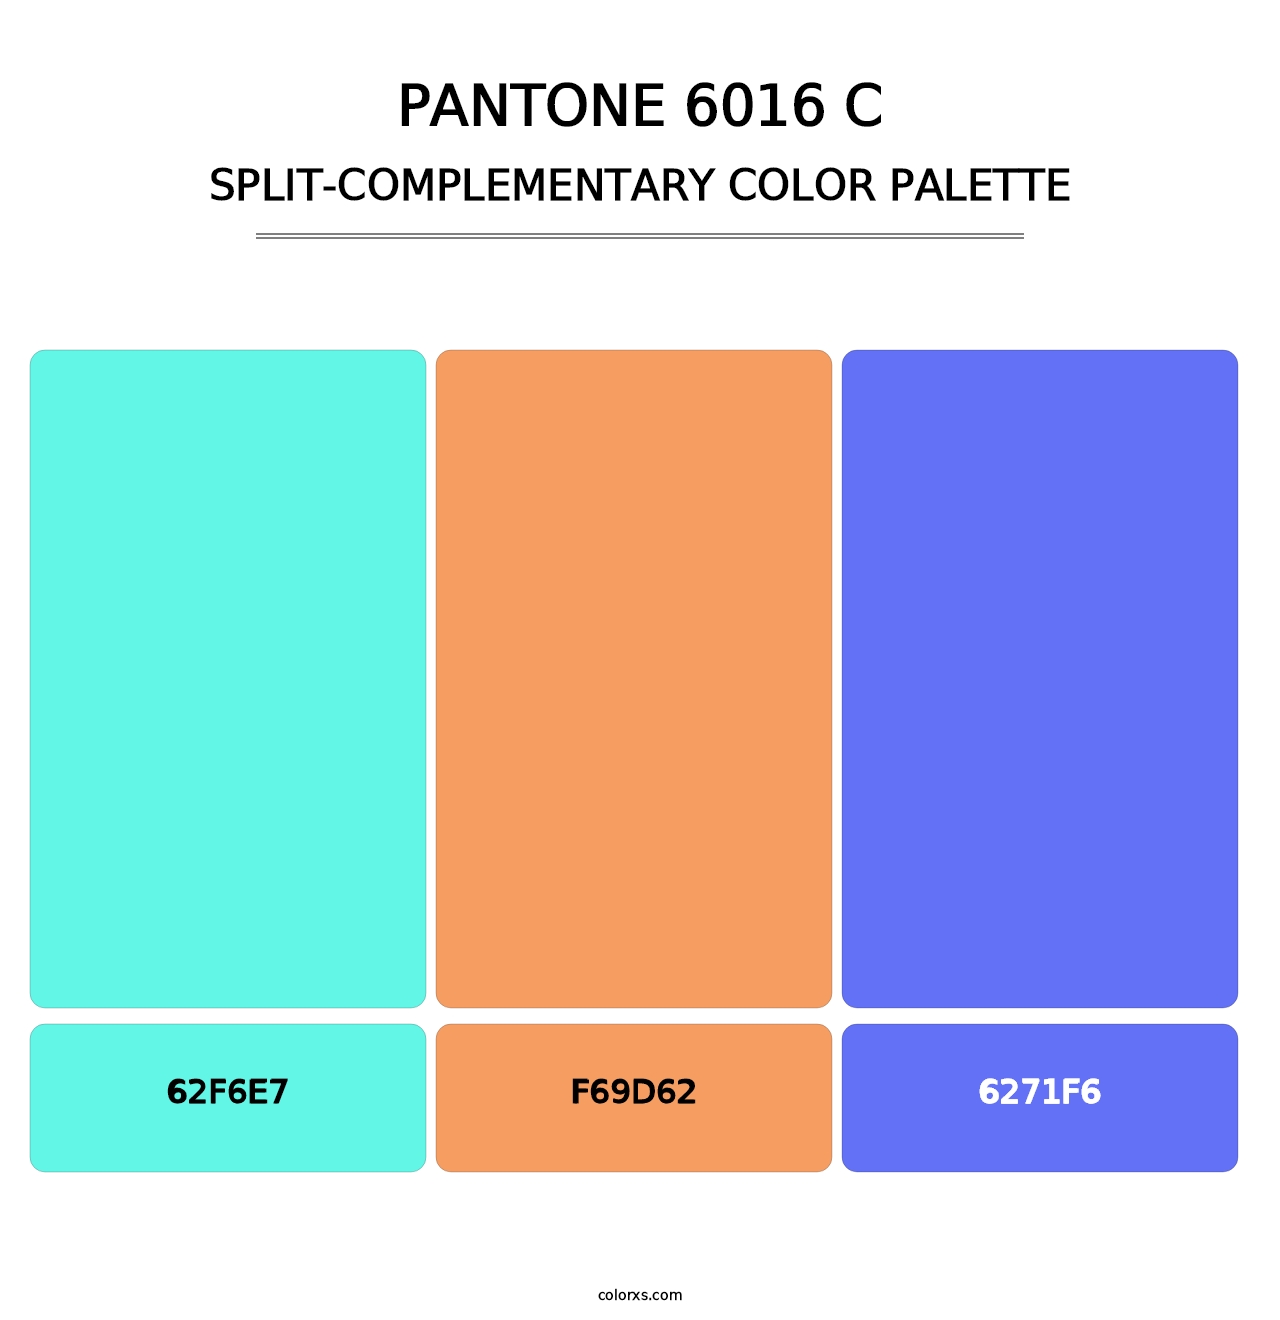 PANTONE 6016 C - Split-Complementary Color Palette